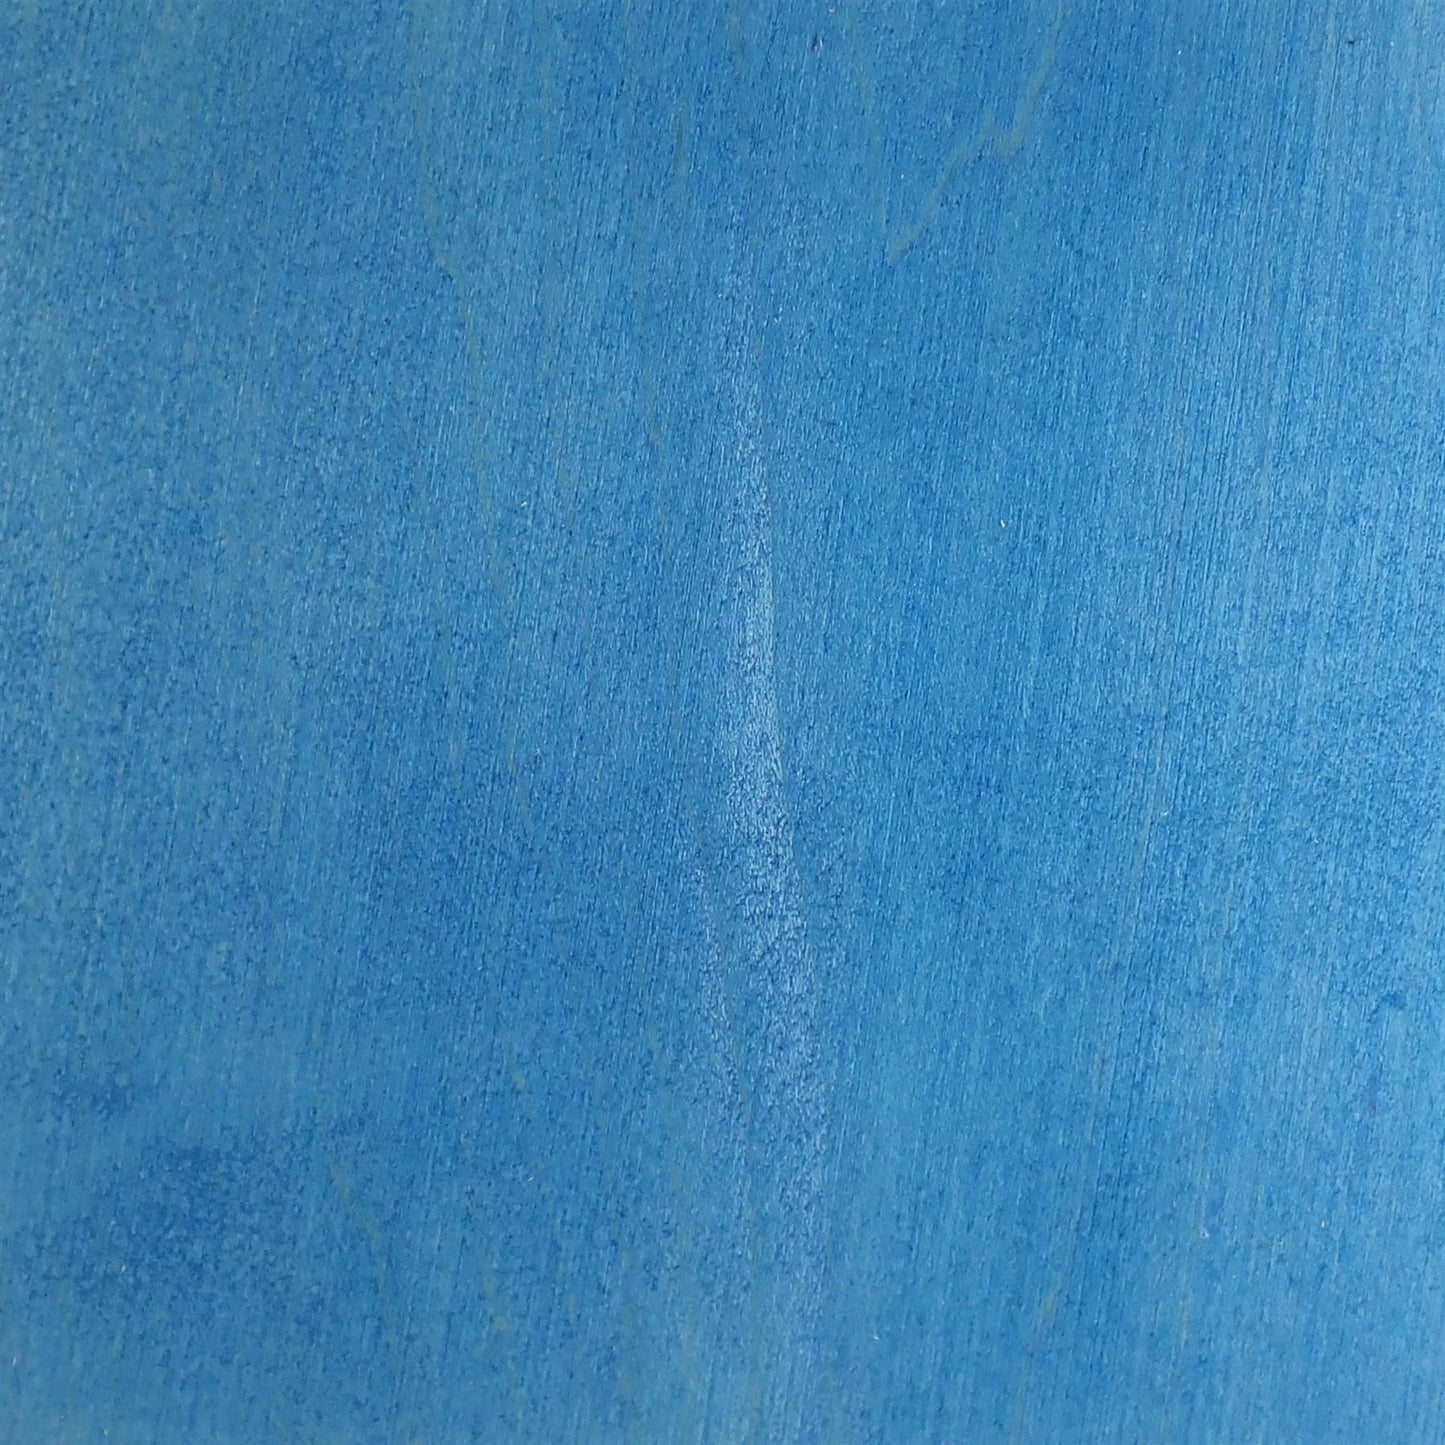 dartfords Cyanine Blue Water Soluble Aniline Wood Dye Powder - 28g 1Oz